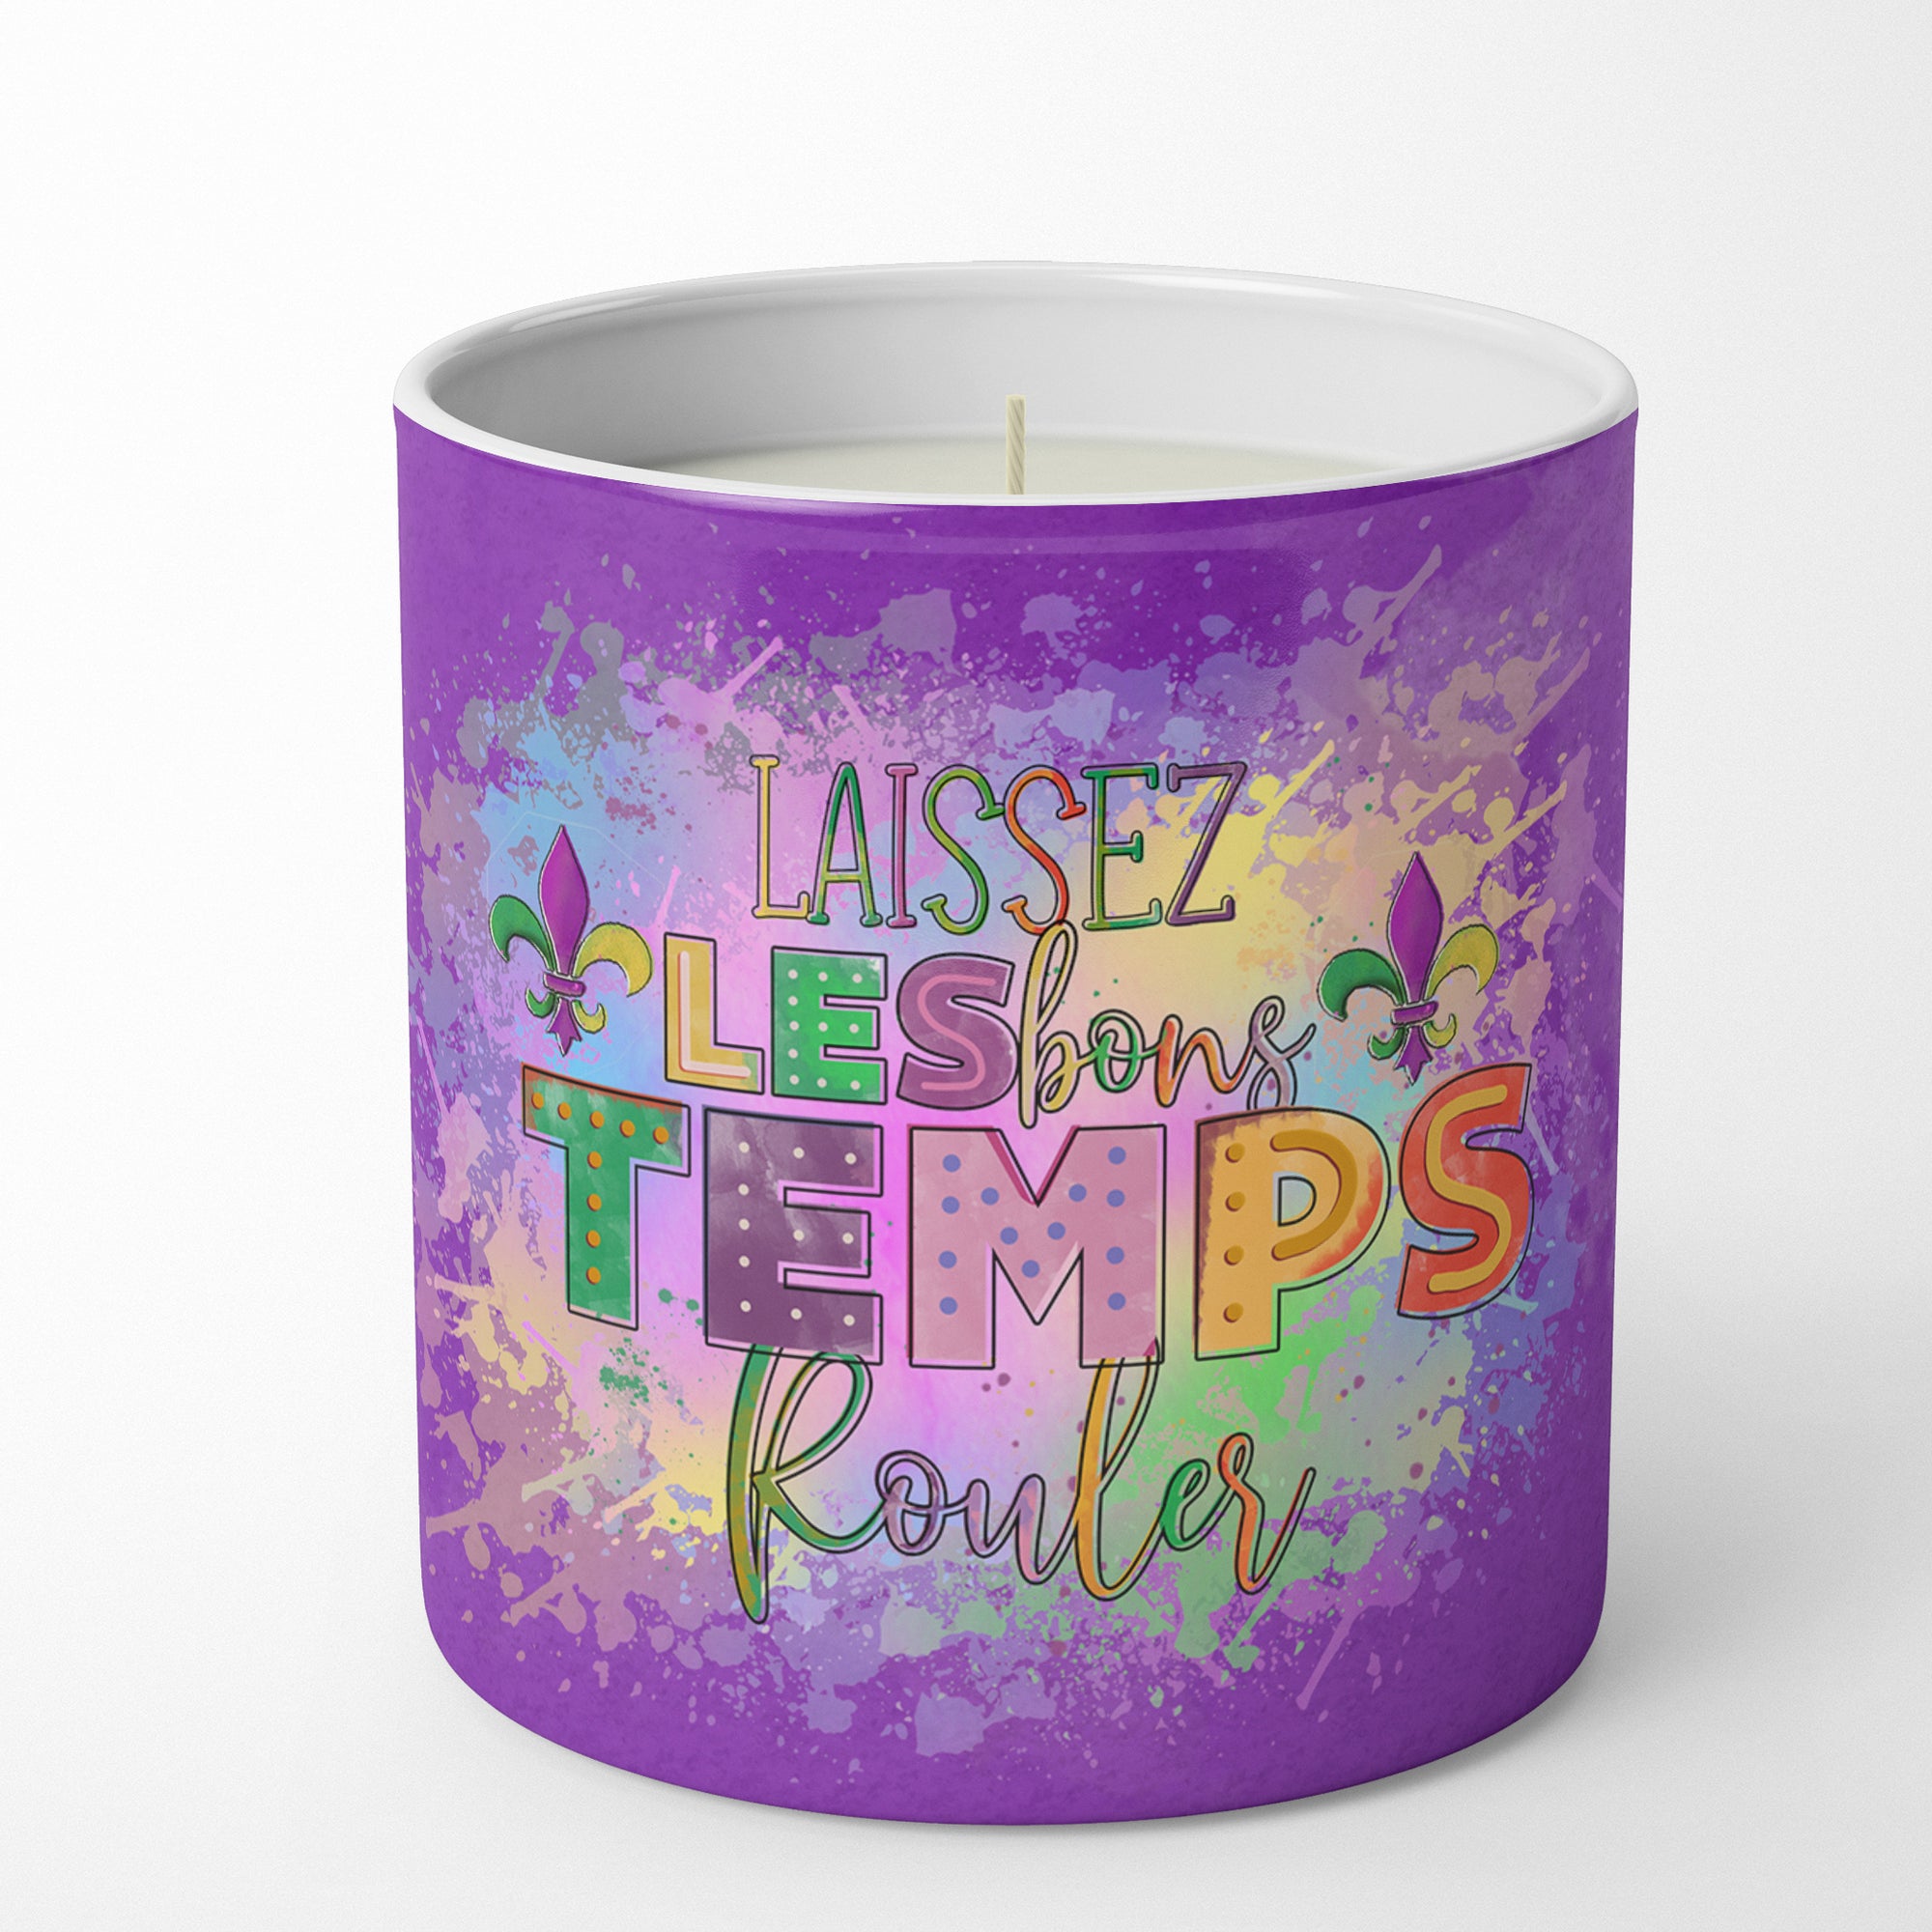 Buy this Laissex Les bons Temps Rouler Mardi Gras 10 oz Decorative Soy Candle